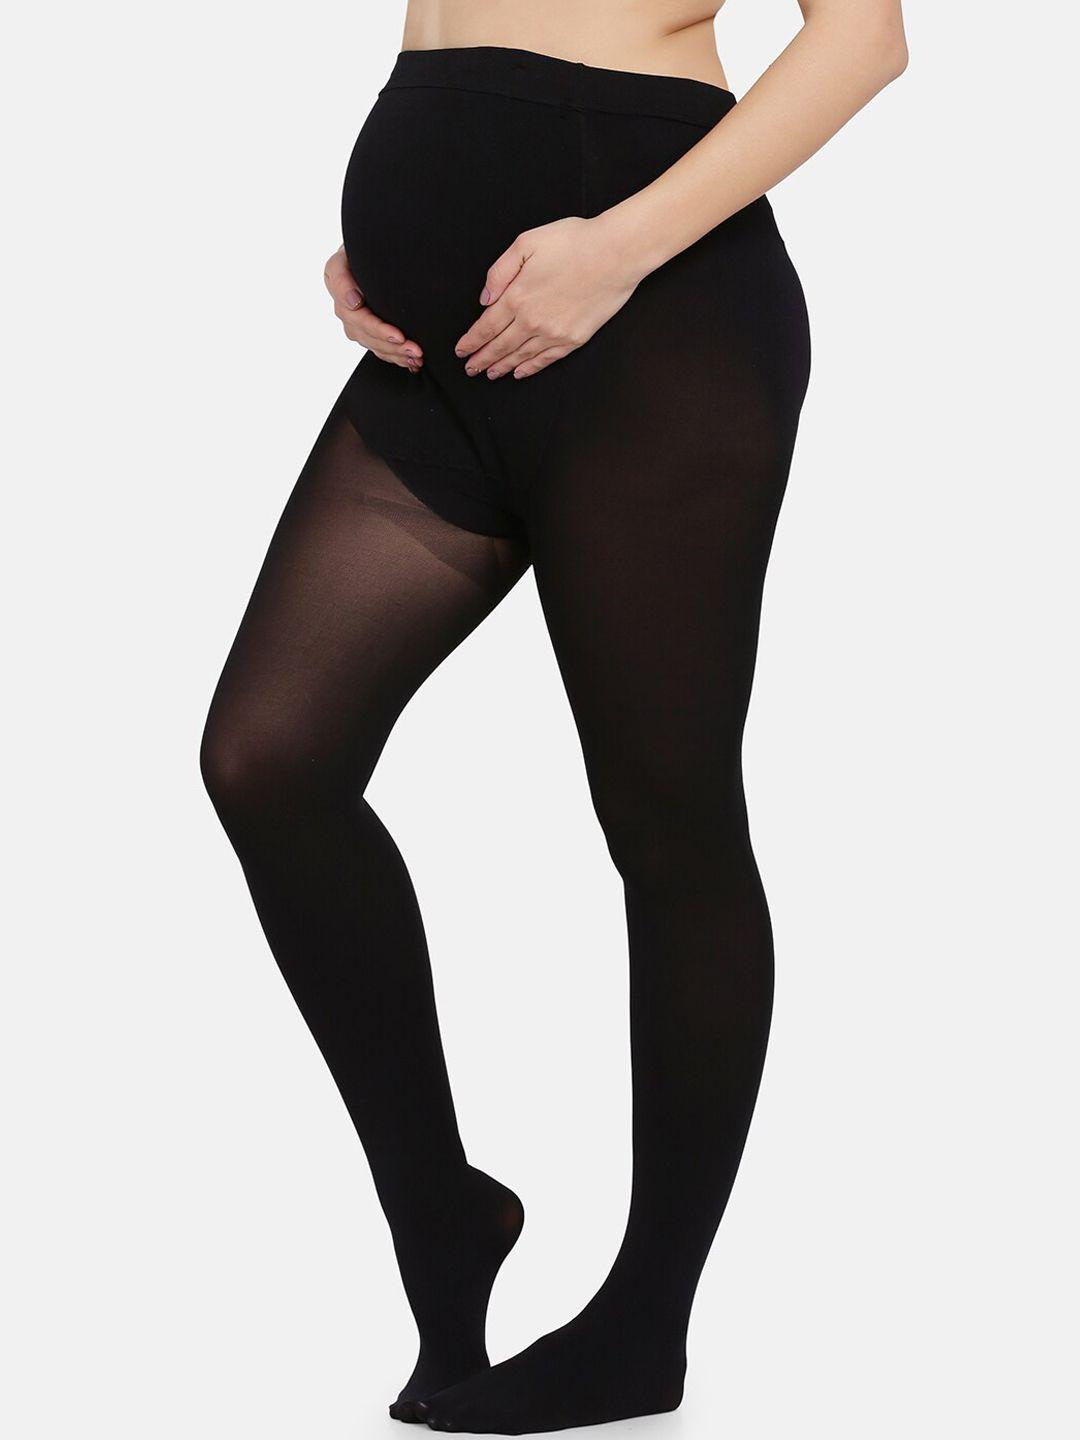 mamma presto women black solid maternity stockings